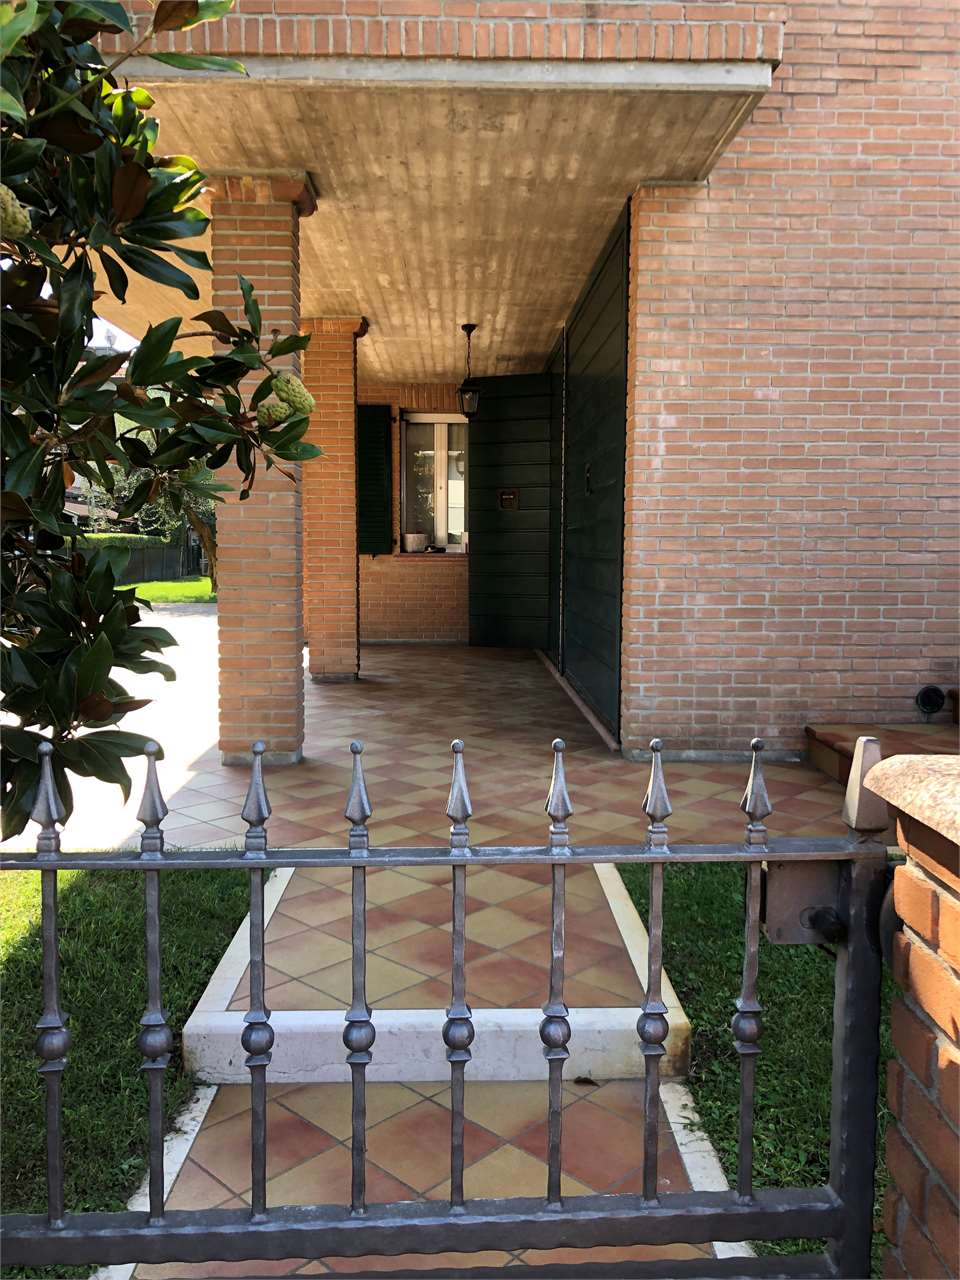 Casa indipendente in vendita a Ravenna (RA)